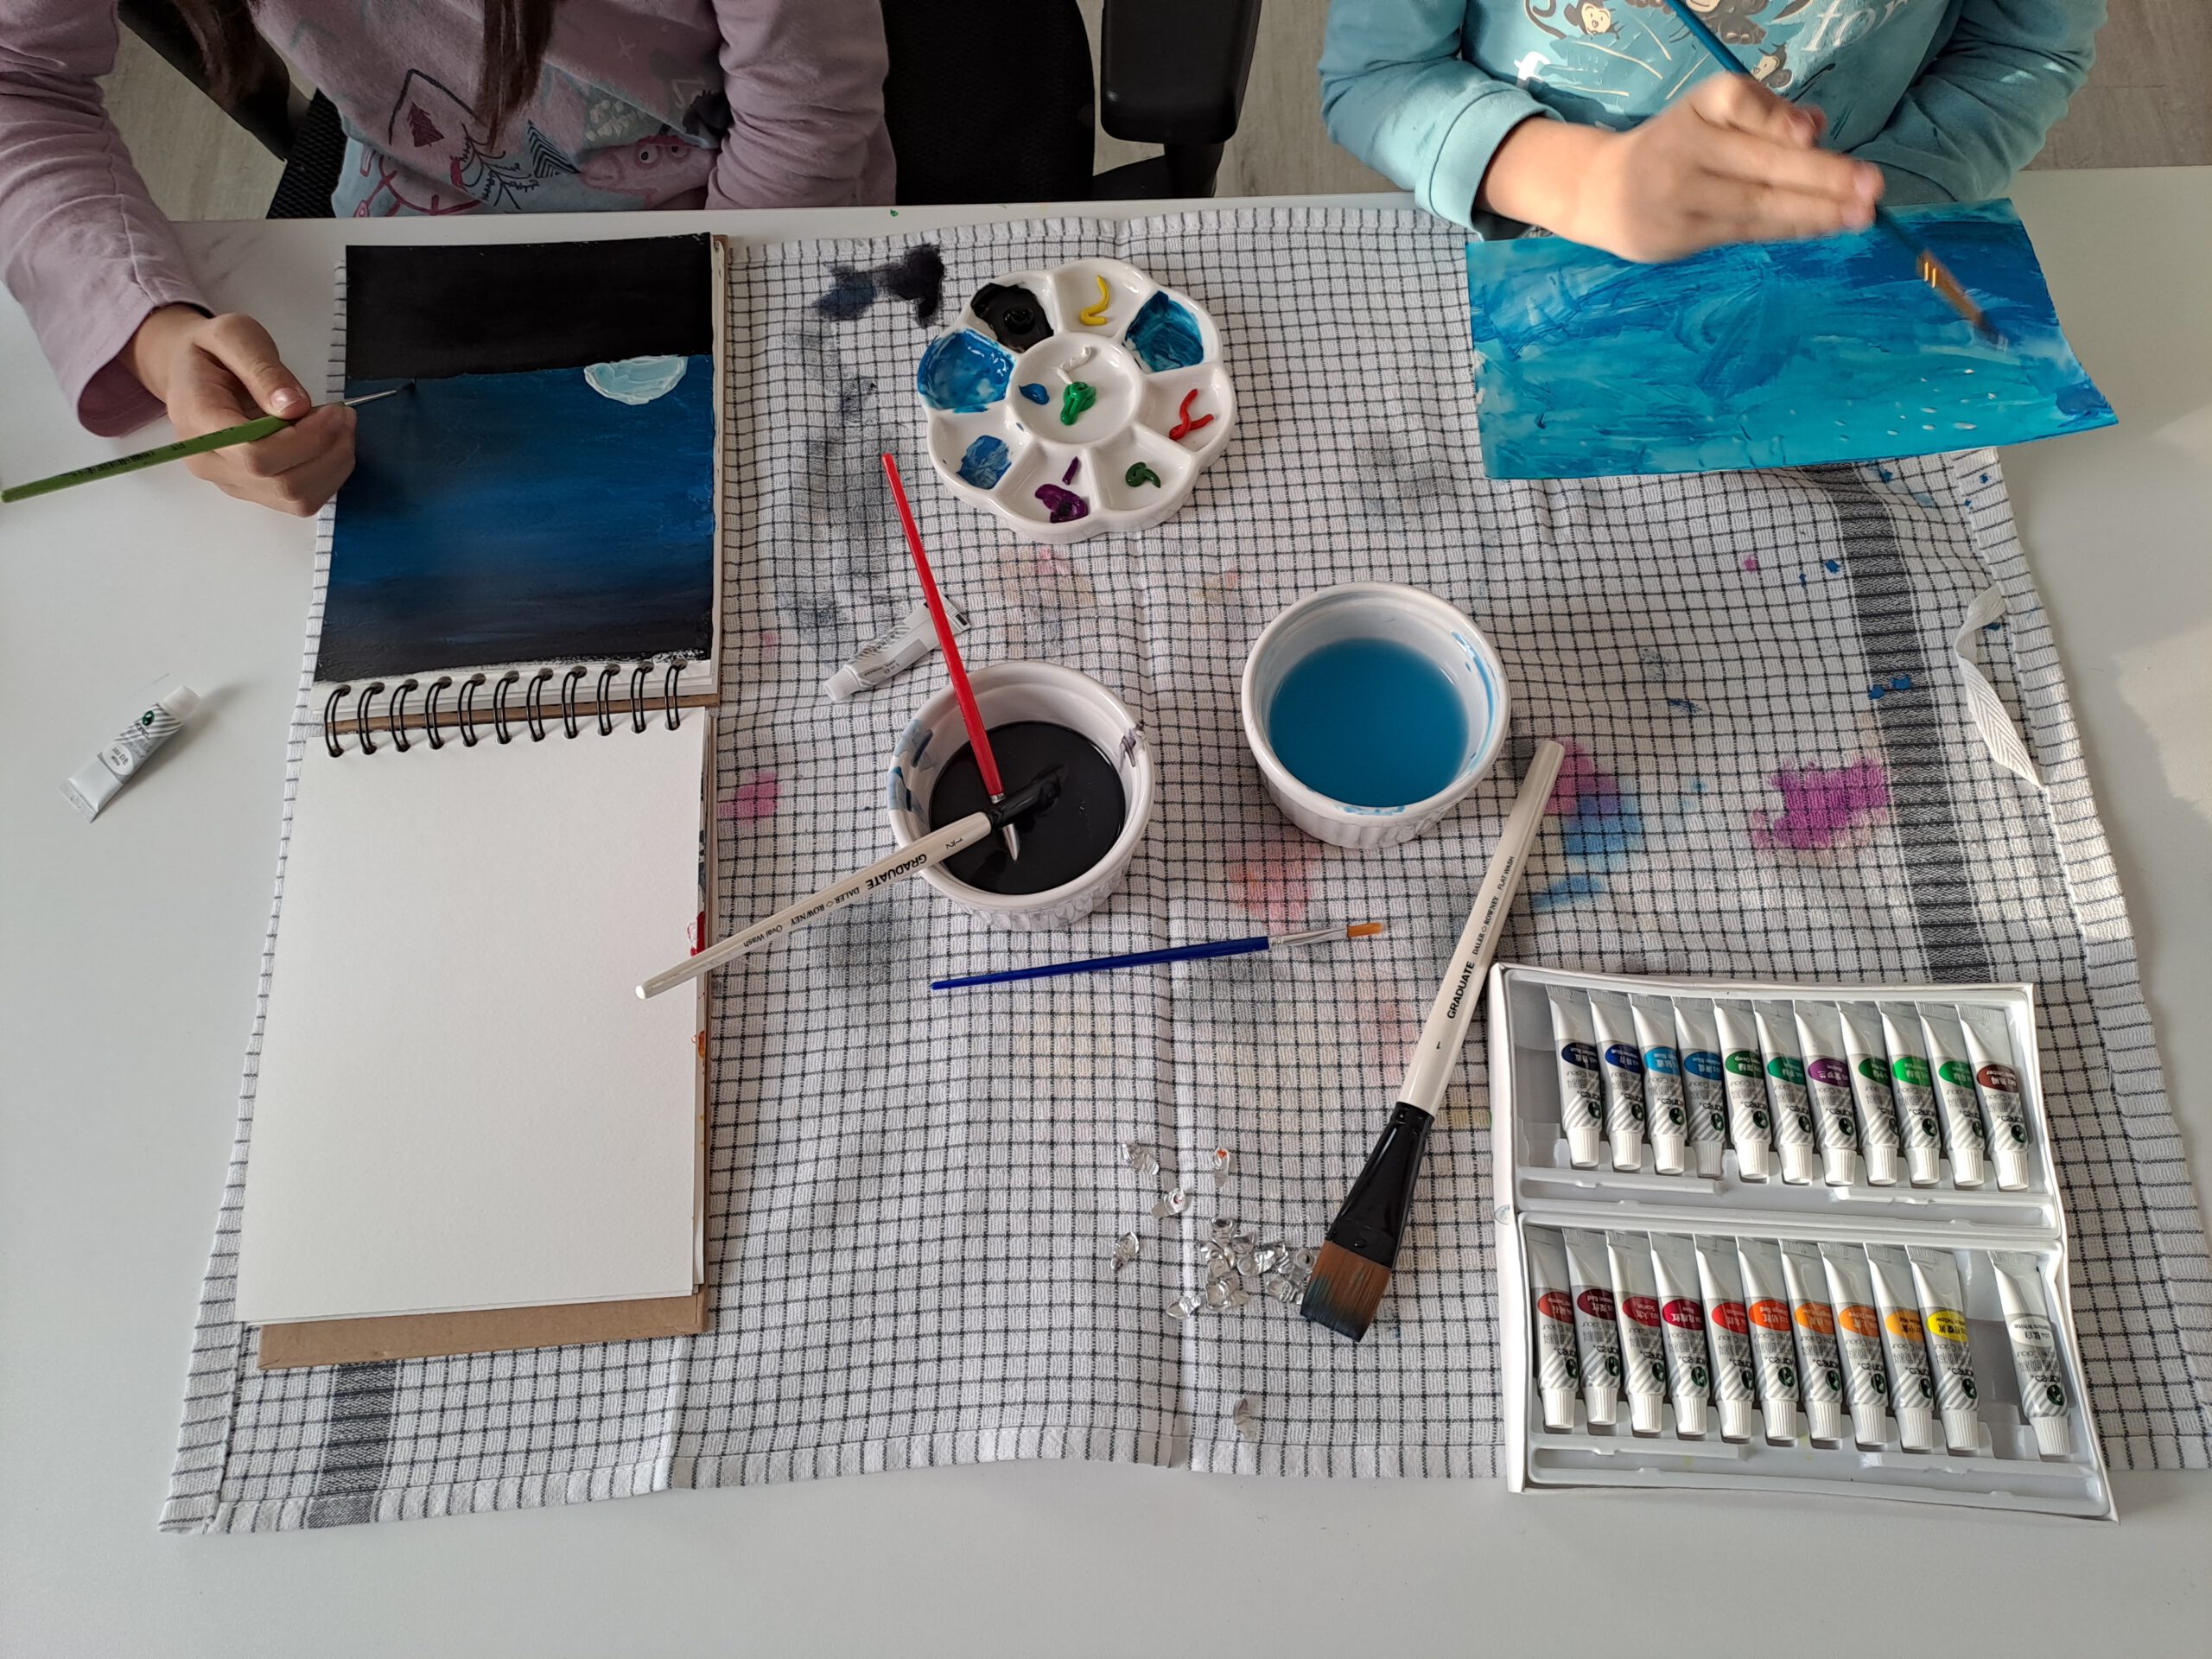 Painting: Kids’ New Hobby